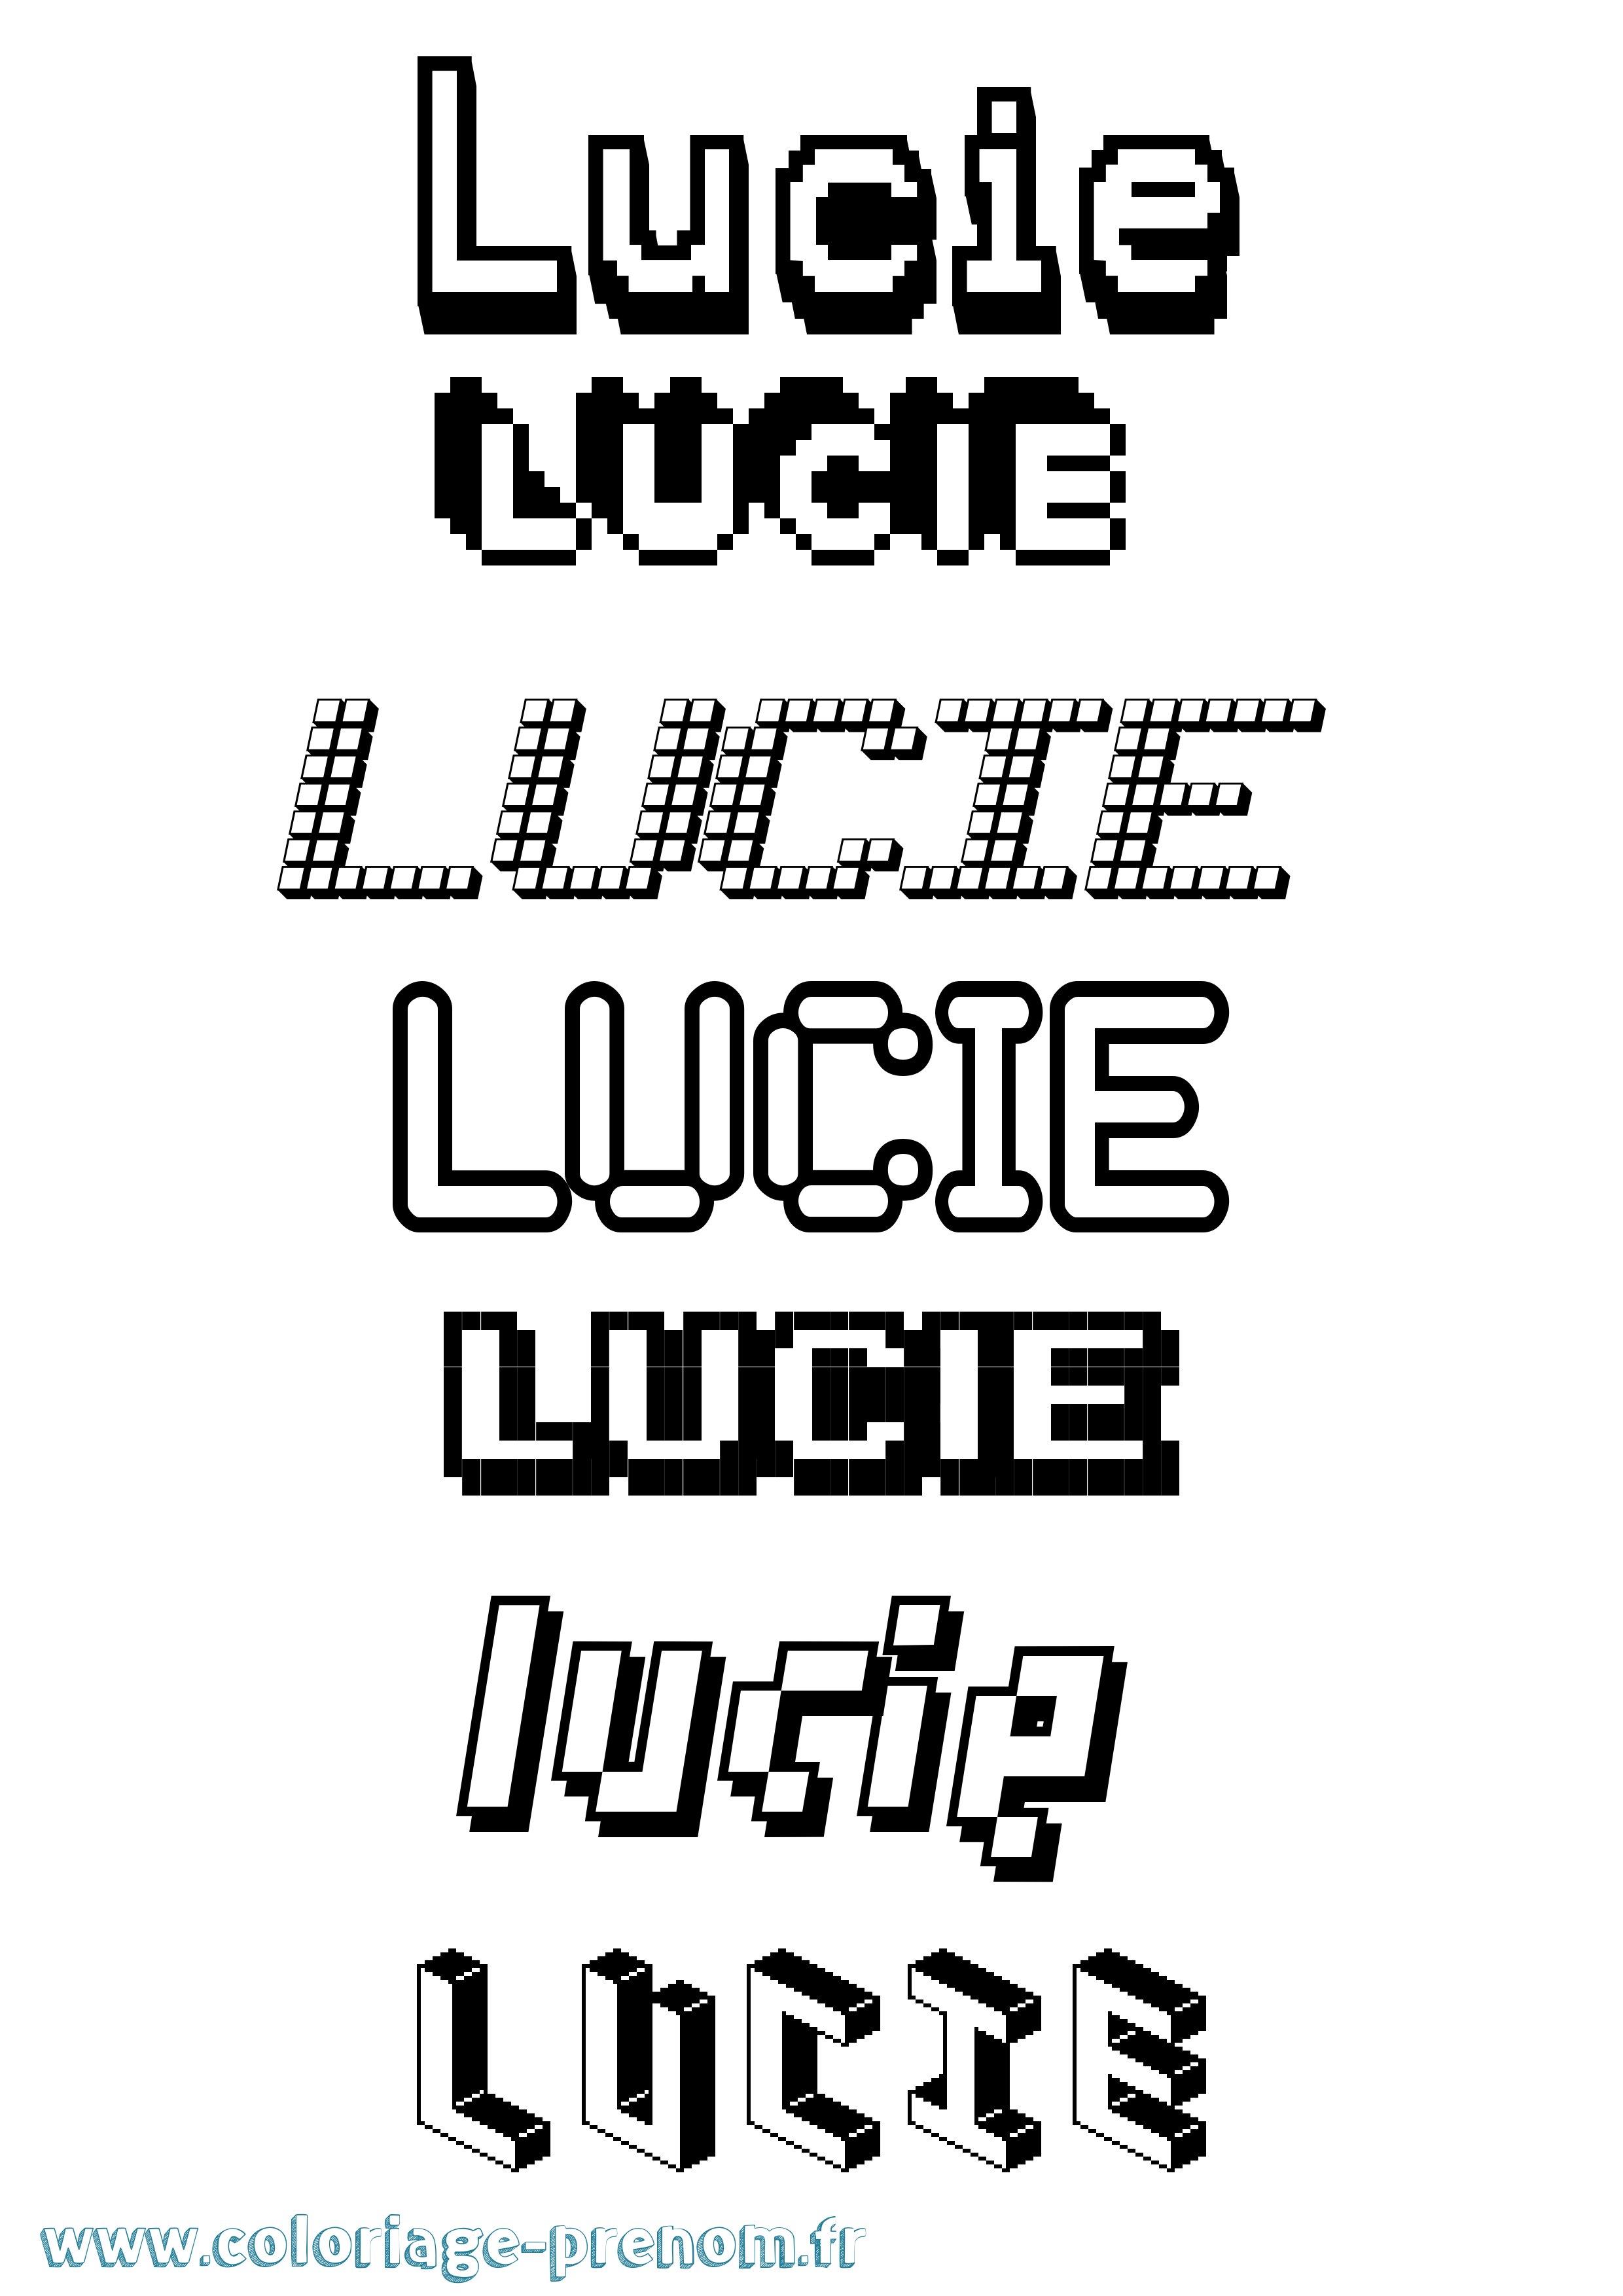 Coloriage prénom Lucie